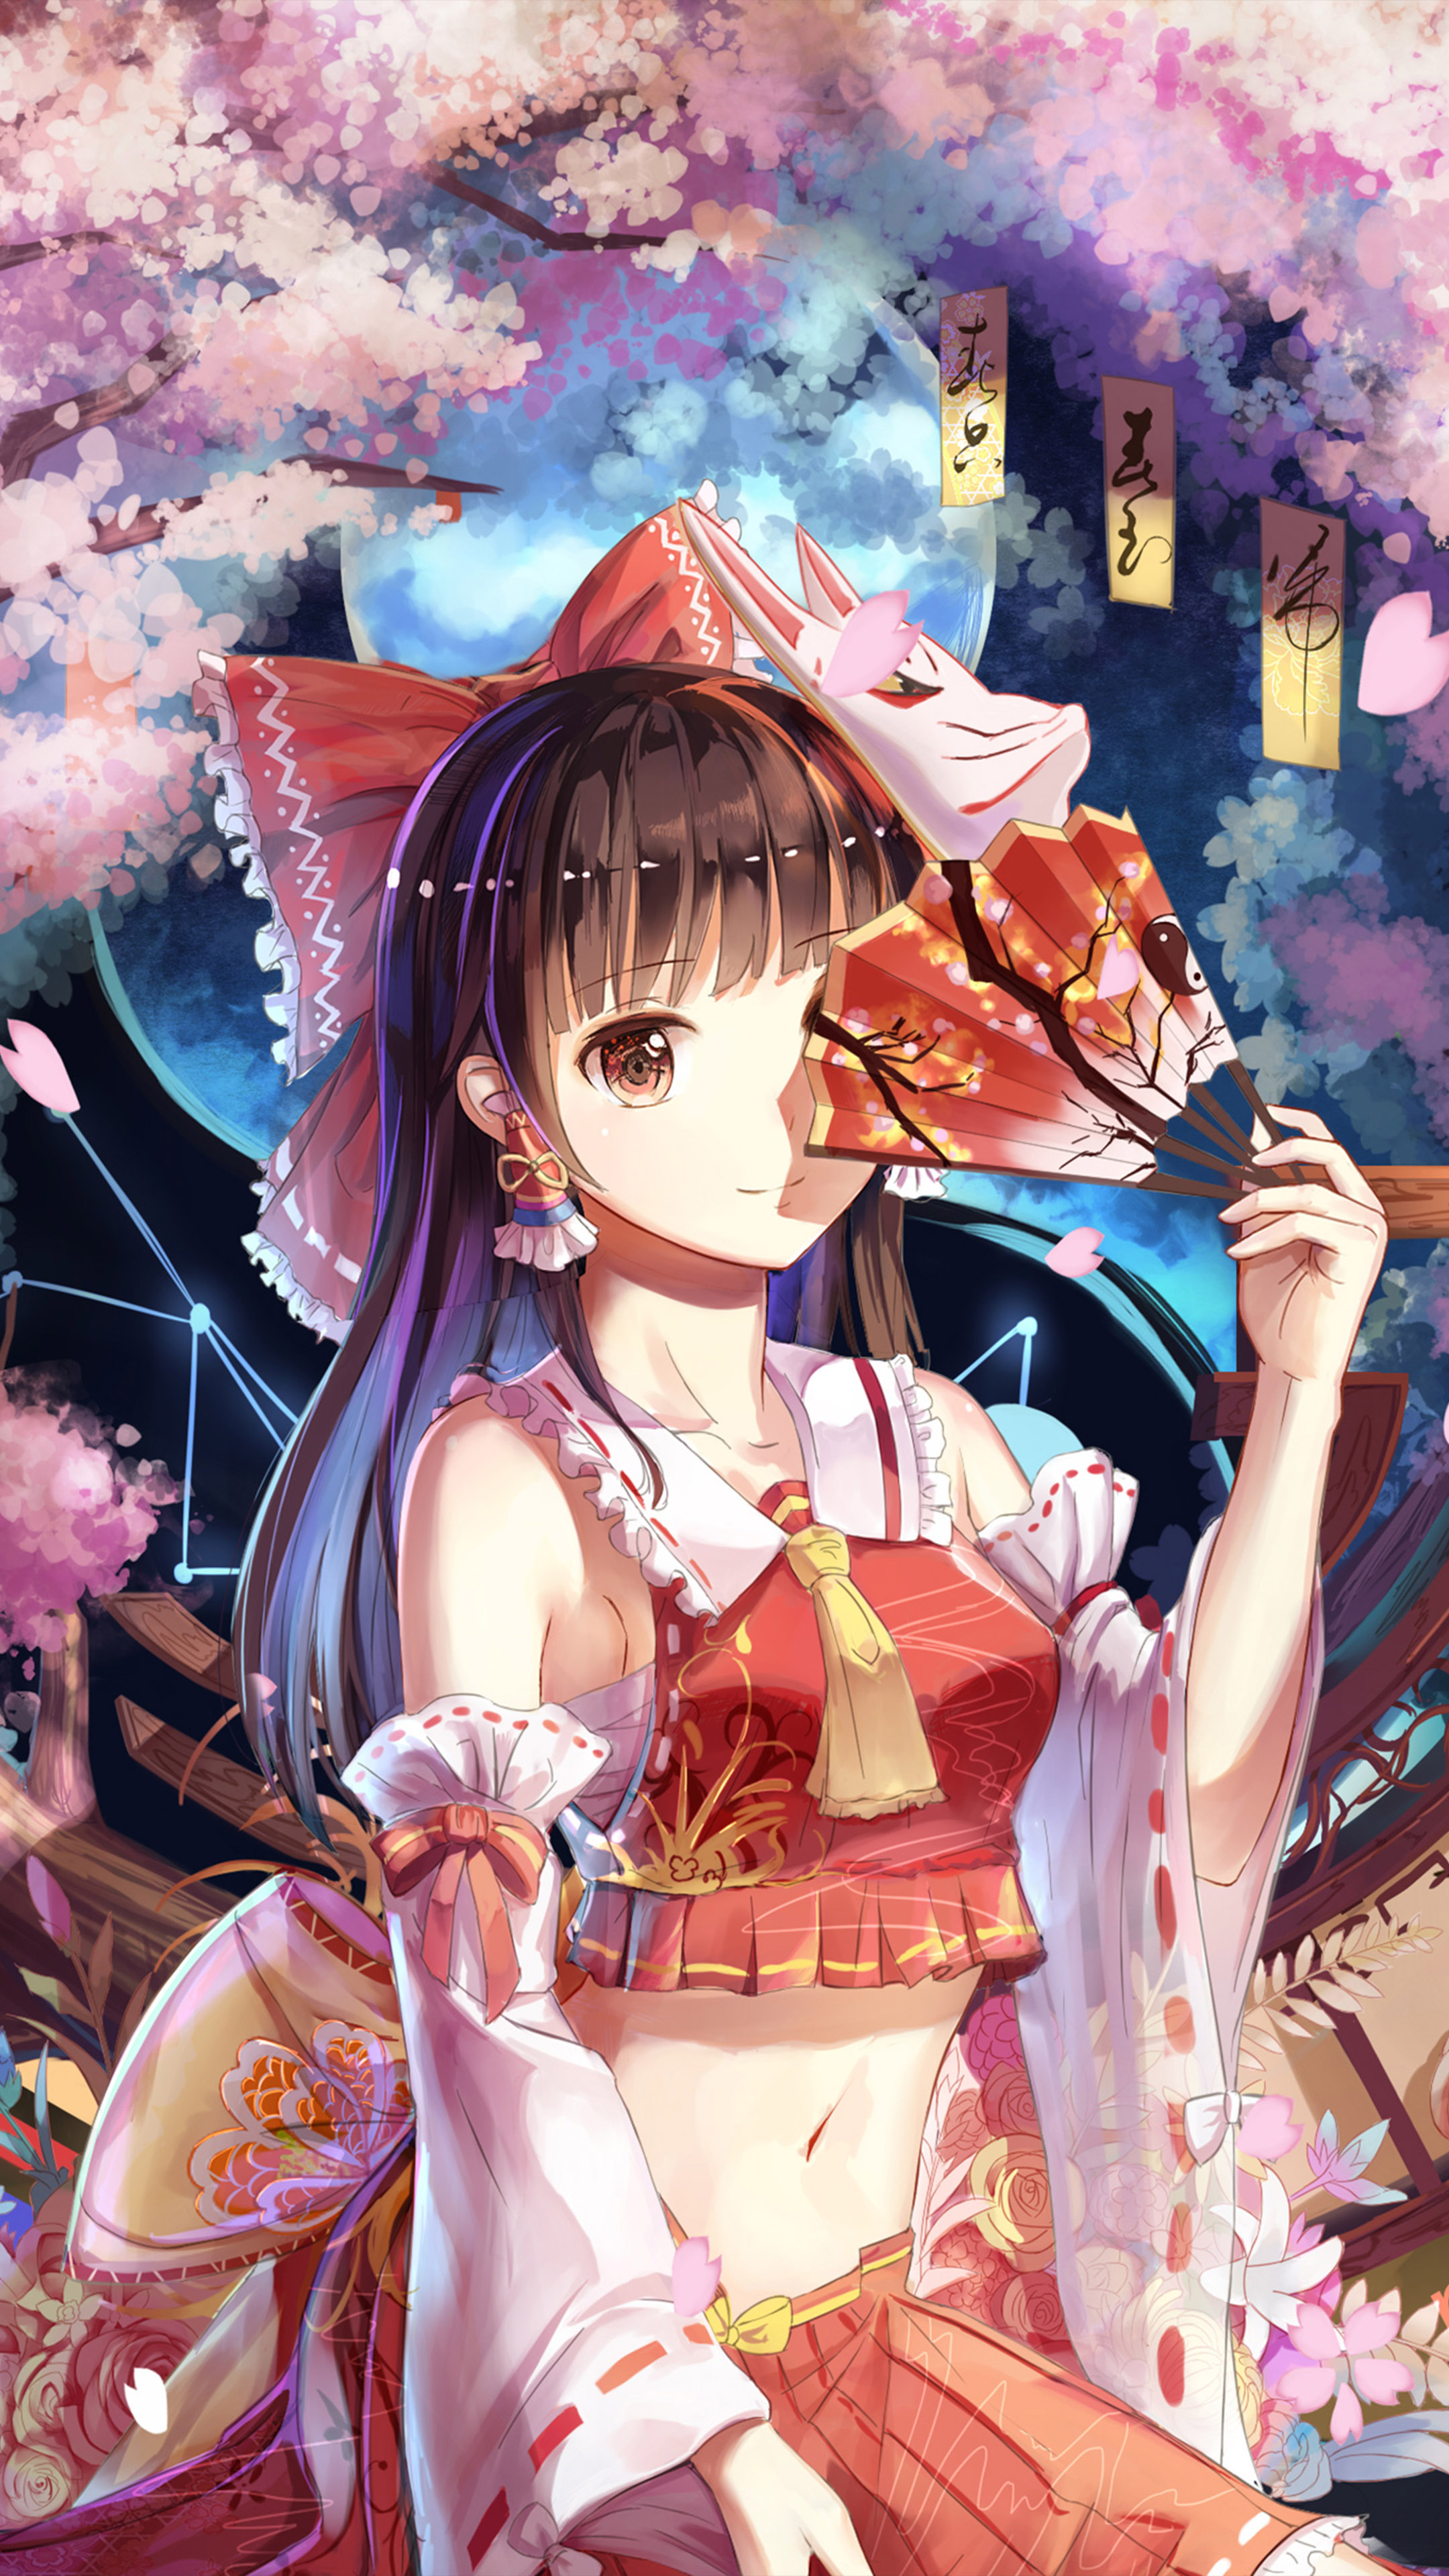 Anime Girl Wallpaper Hd Free Download gambar ke 10